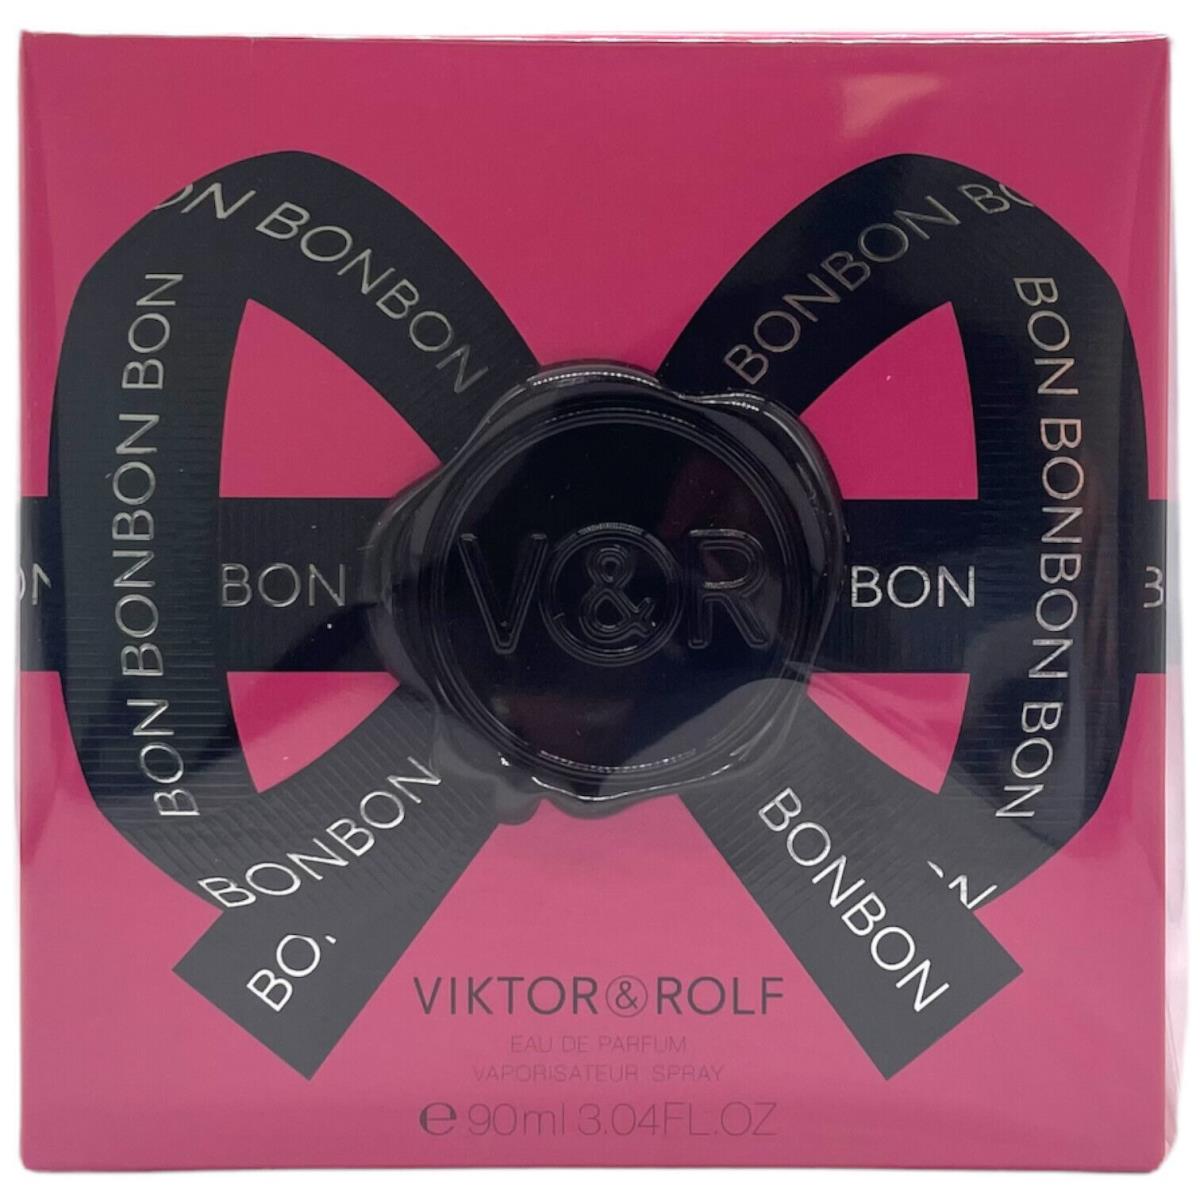 Viktor Rolf Bonbon For Women 3.04 oz Eau de Parfum Spray